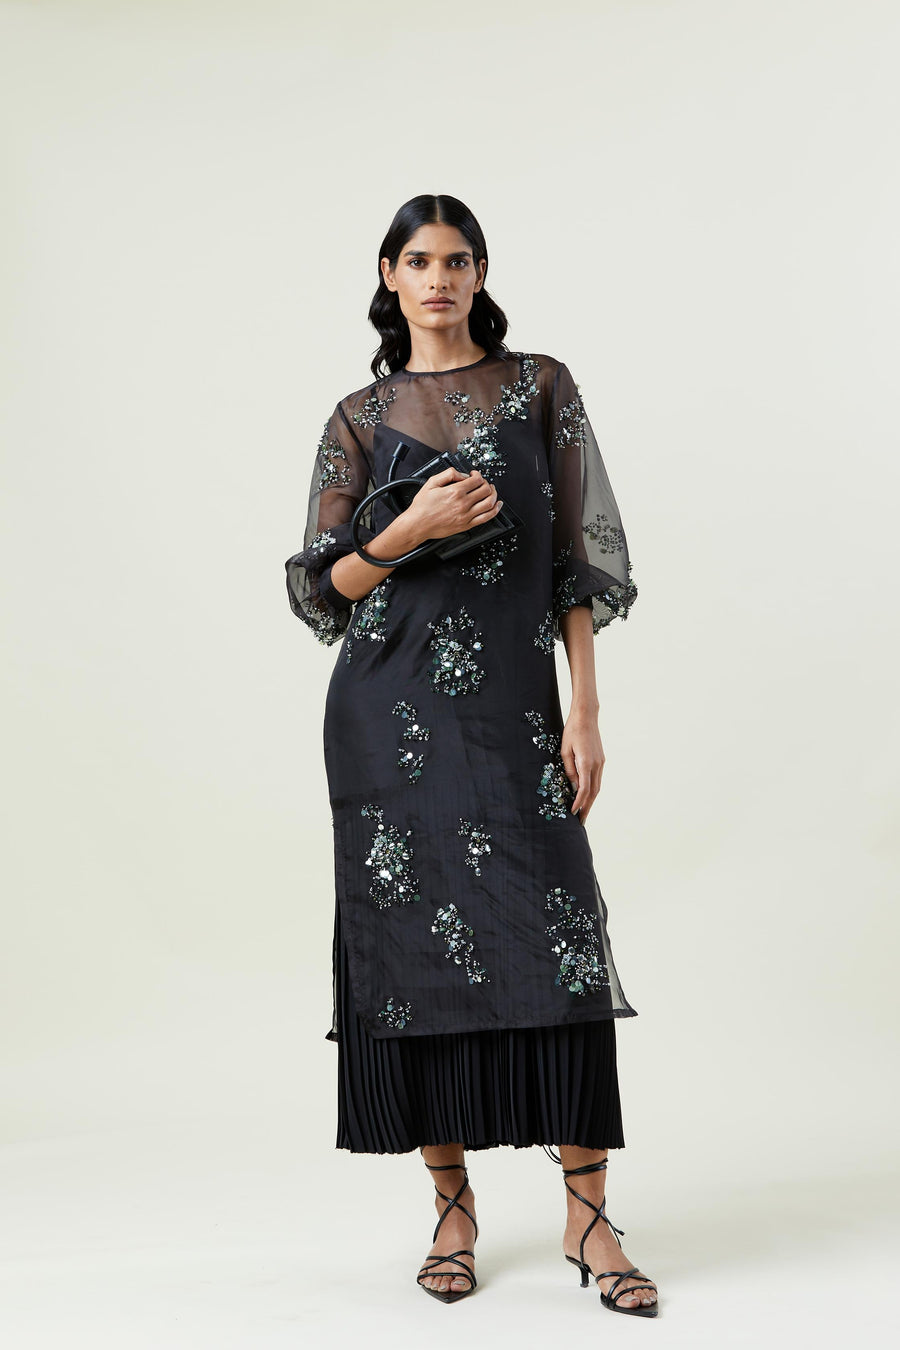 ‘CELESTIA’ EMBELLISHED DRESS - Kanika Goyal Label